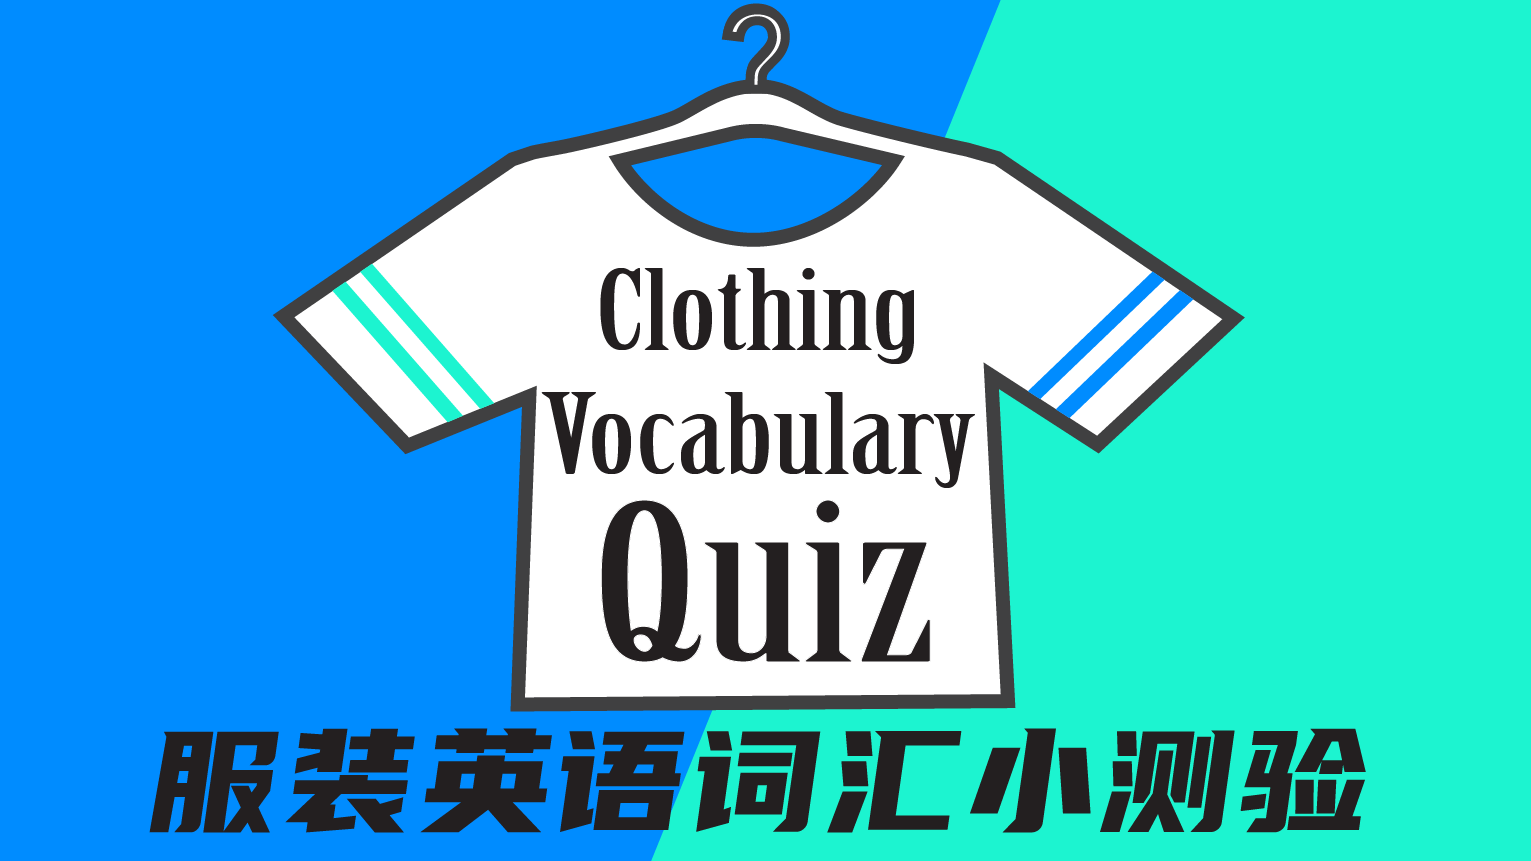 Clothing Vocabulary Quiz